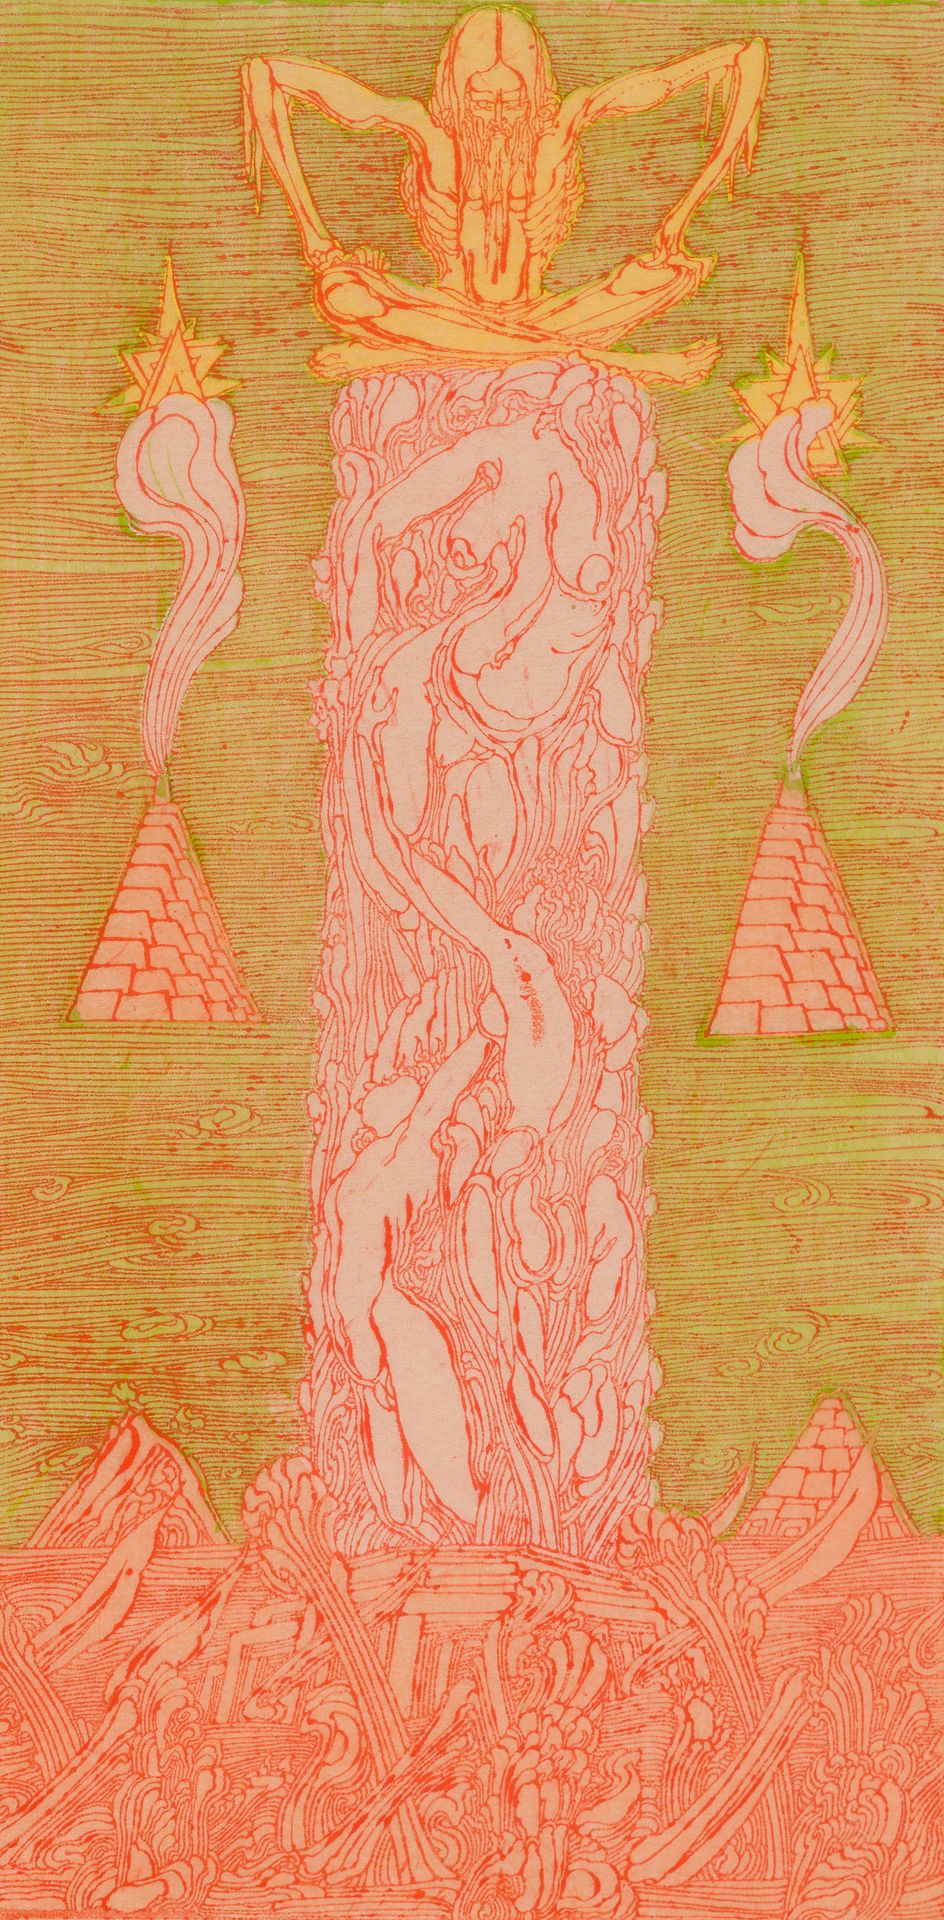 Fuchs, Ernst 一套2件：《达芙妮》，1968年/《圣西门石碑》，1968年
达芙妮》：纸上水印和干点法/《圣西门斯蒂利斯》：纸上彩色石版画
达芙妮：&hellip;